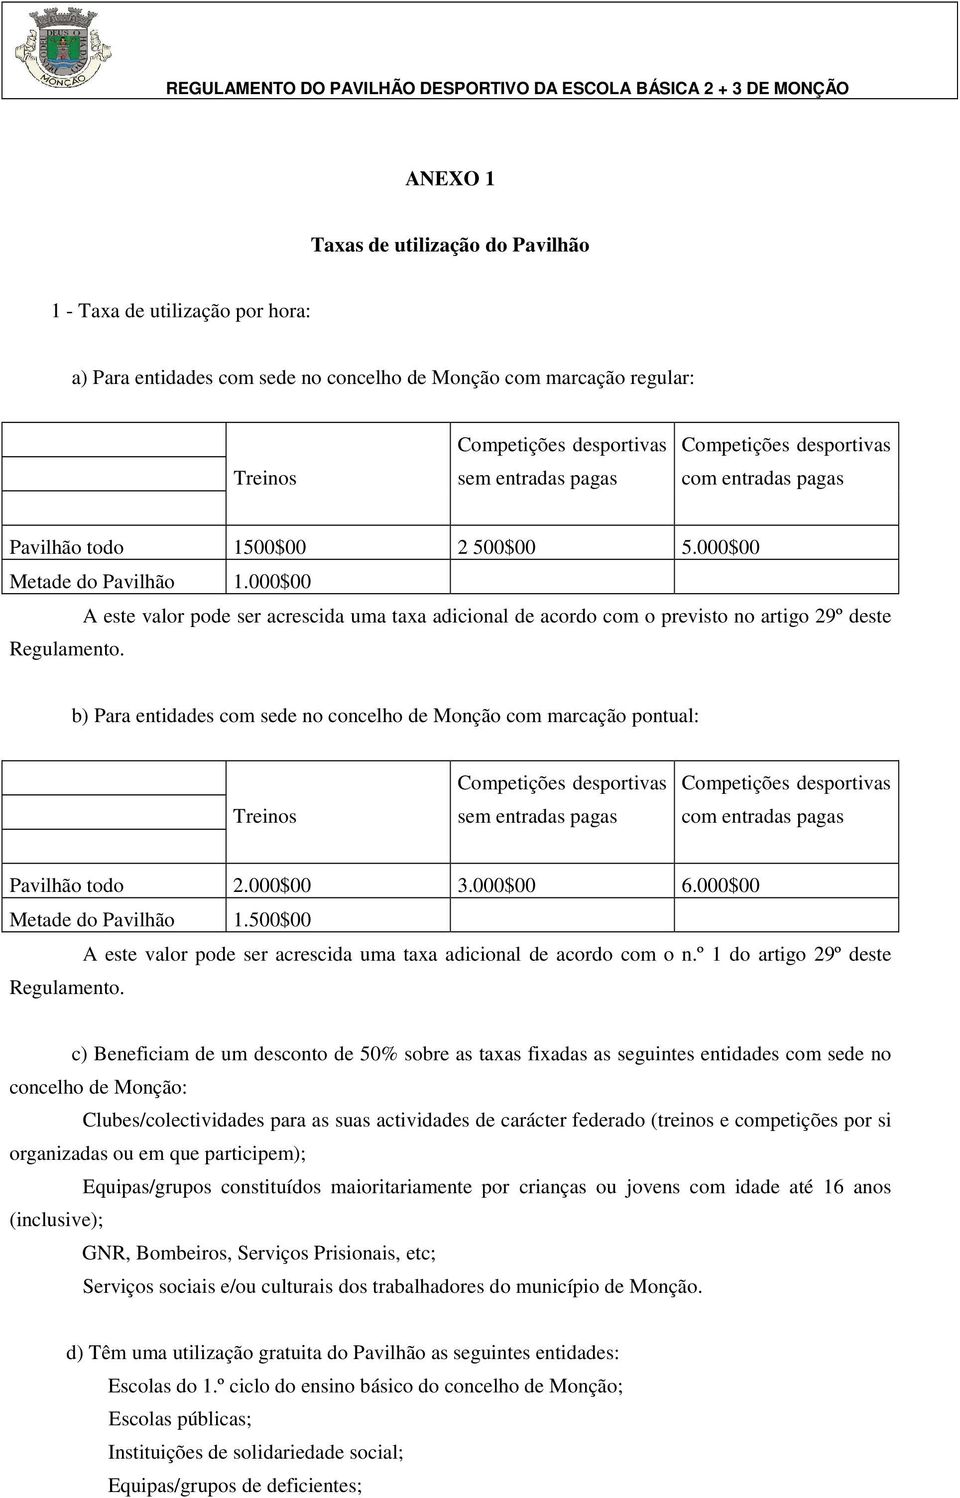 b) Para entidades com sede no concelho de Monção com marcação pontual: Treinos sem entradas pagas com entradas pagas Pavilhão todo 2.000$00 3.000$00 6.000$00 Metade do Pavilhão 1.